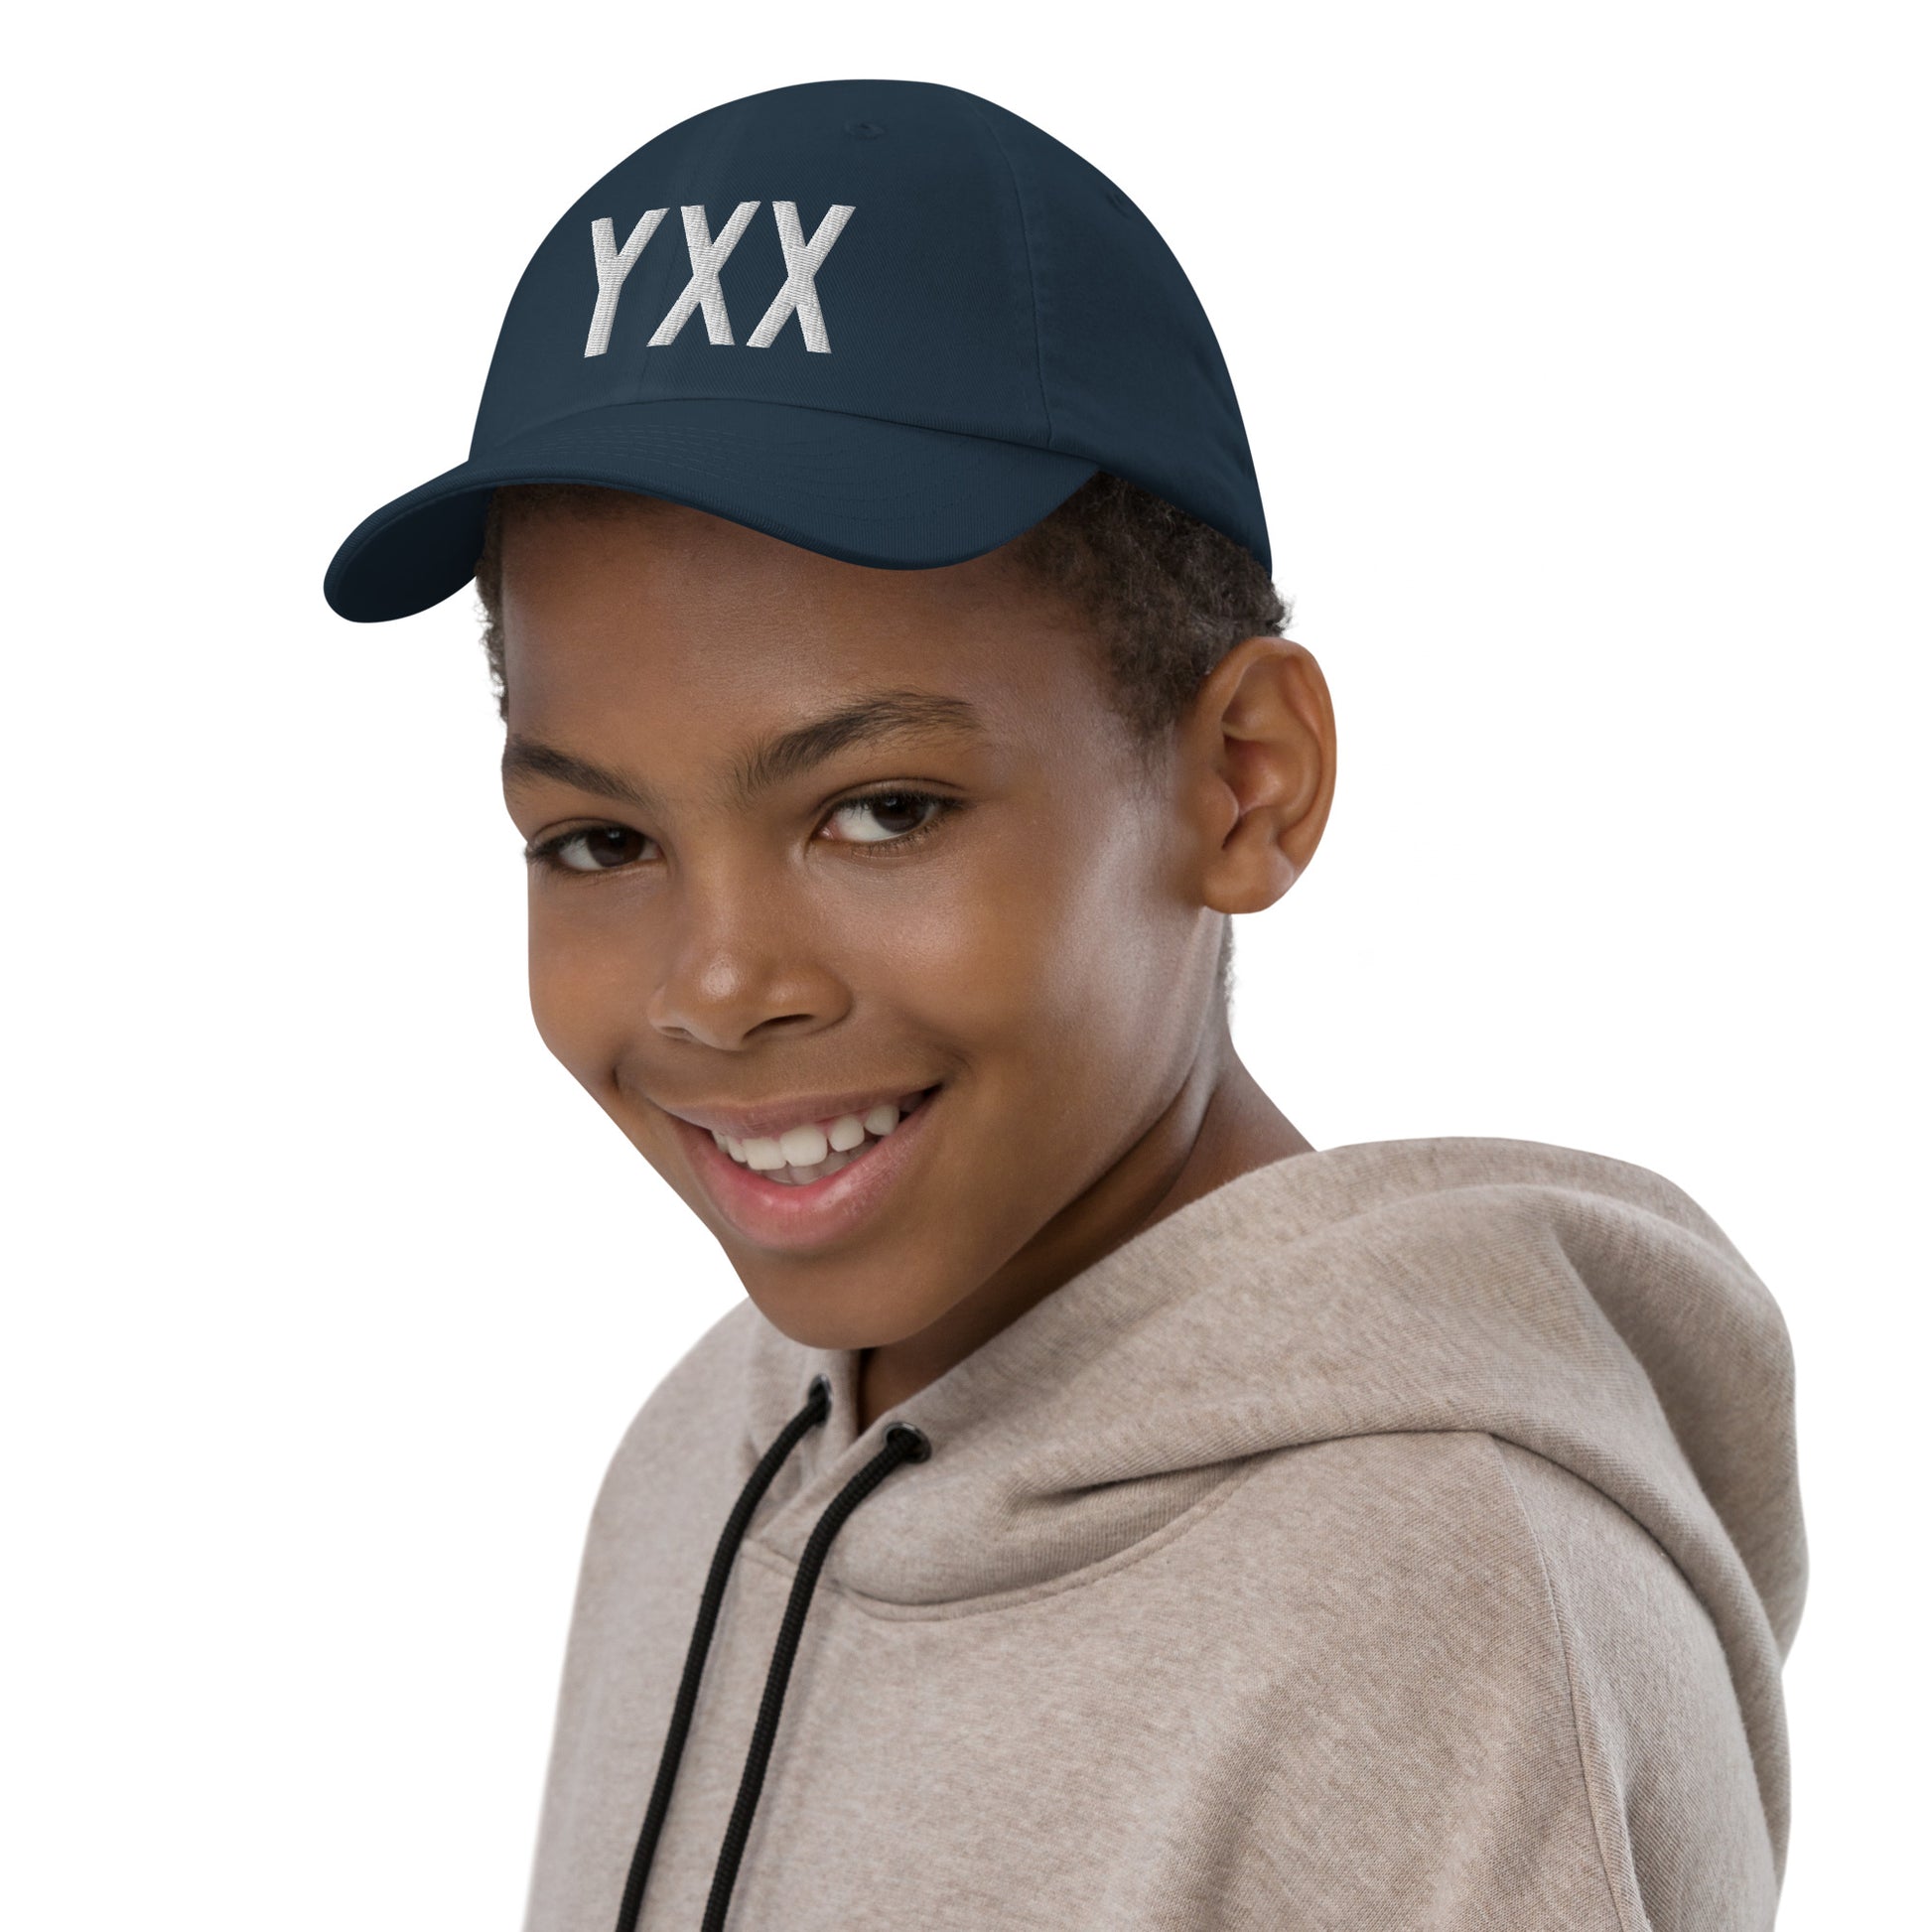 Airport Code Kid's Baseball Cap - White • YXX Abbotsford • YHM Designs - Image 03